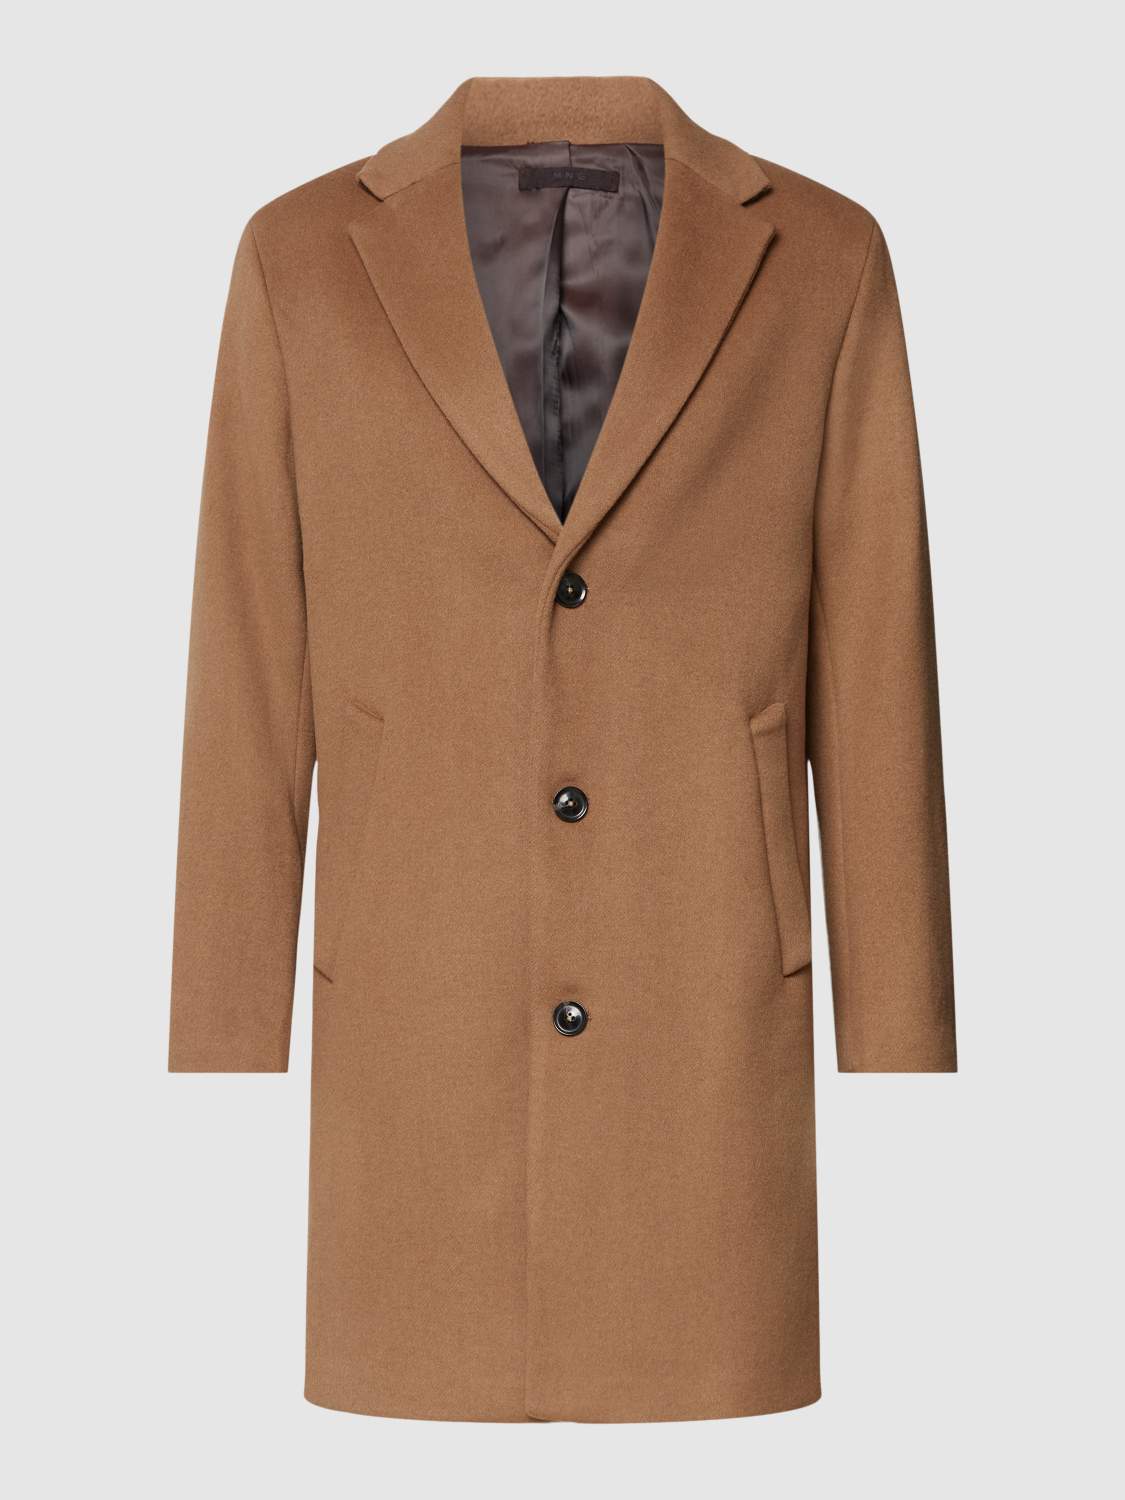 Пальто мужские MANGO - купить пальто мужское Манго, цены в Москве на Мегамаркет